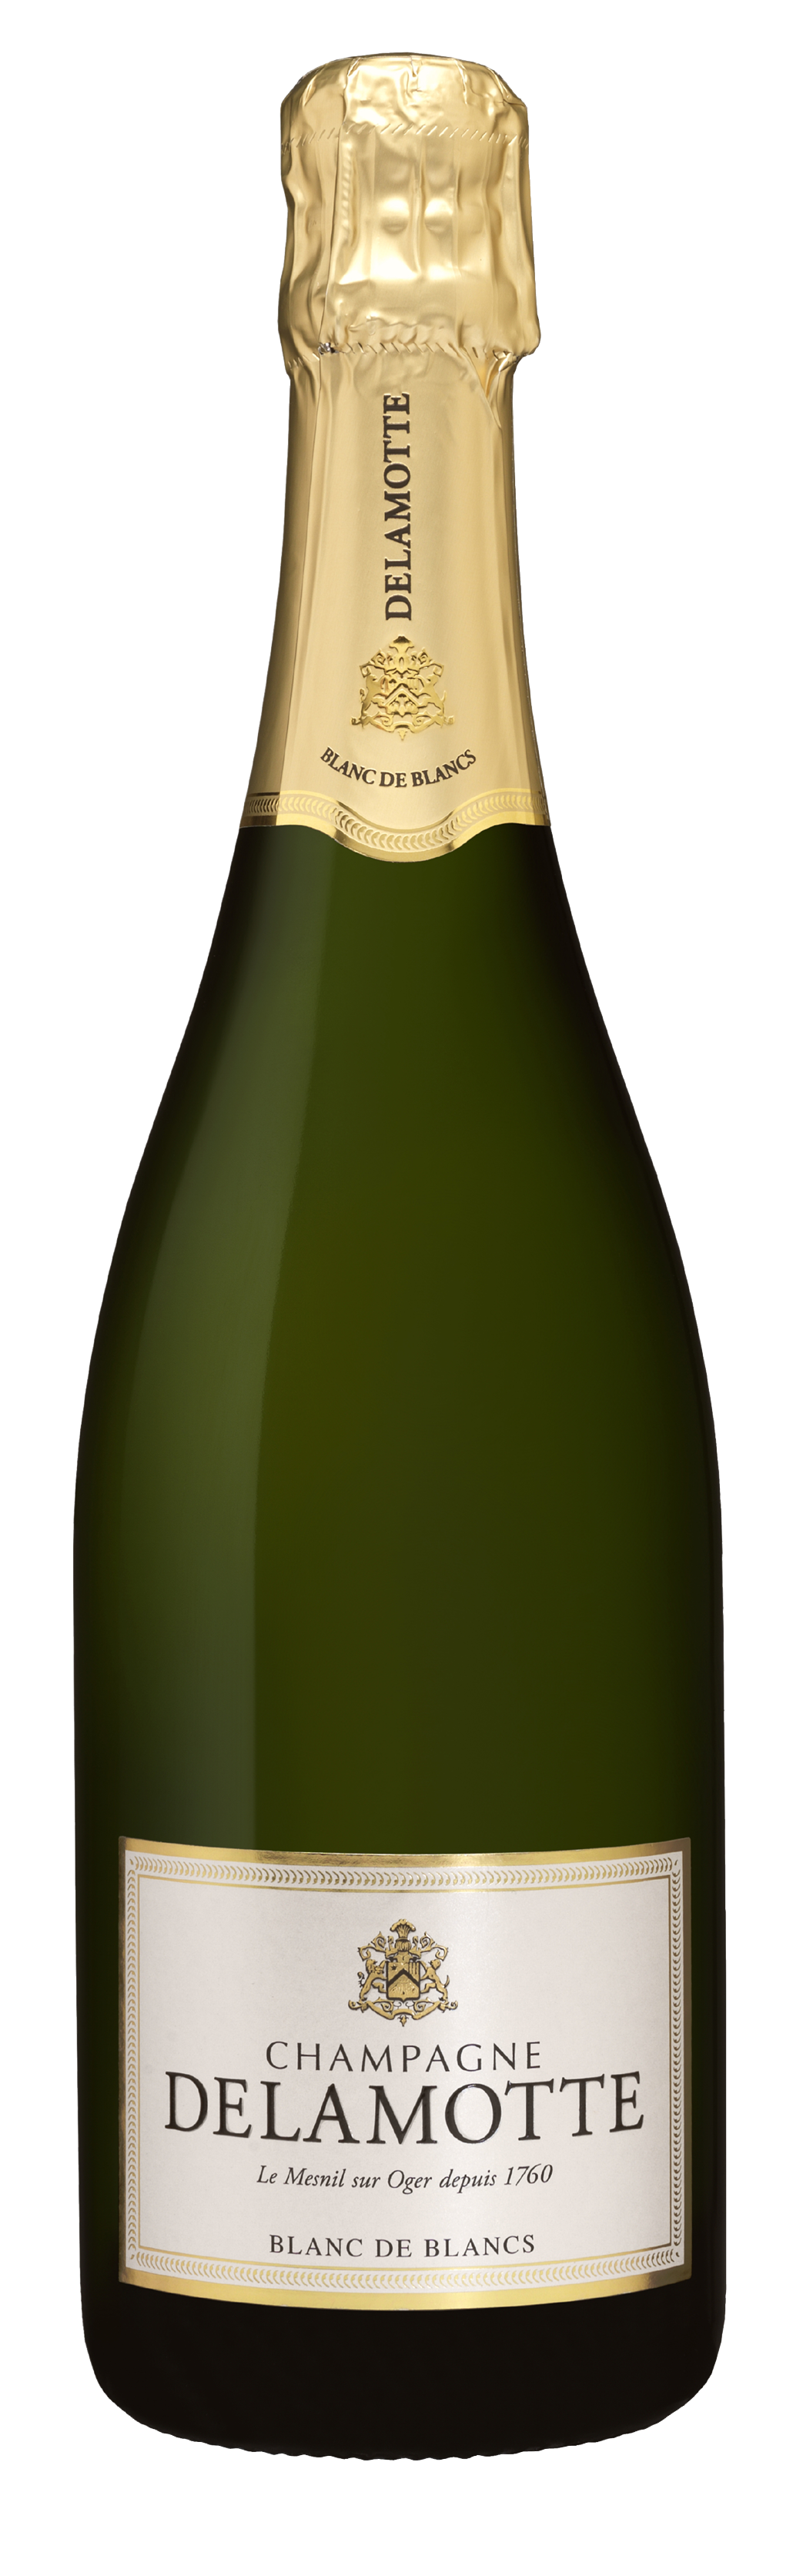 Champagne Delamotte<br />2014 Brut Blanc de Blancs, 1.5 L<br>France